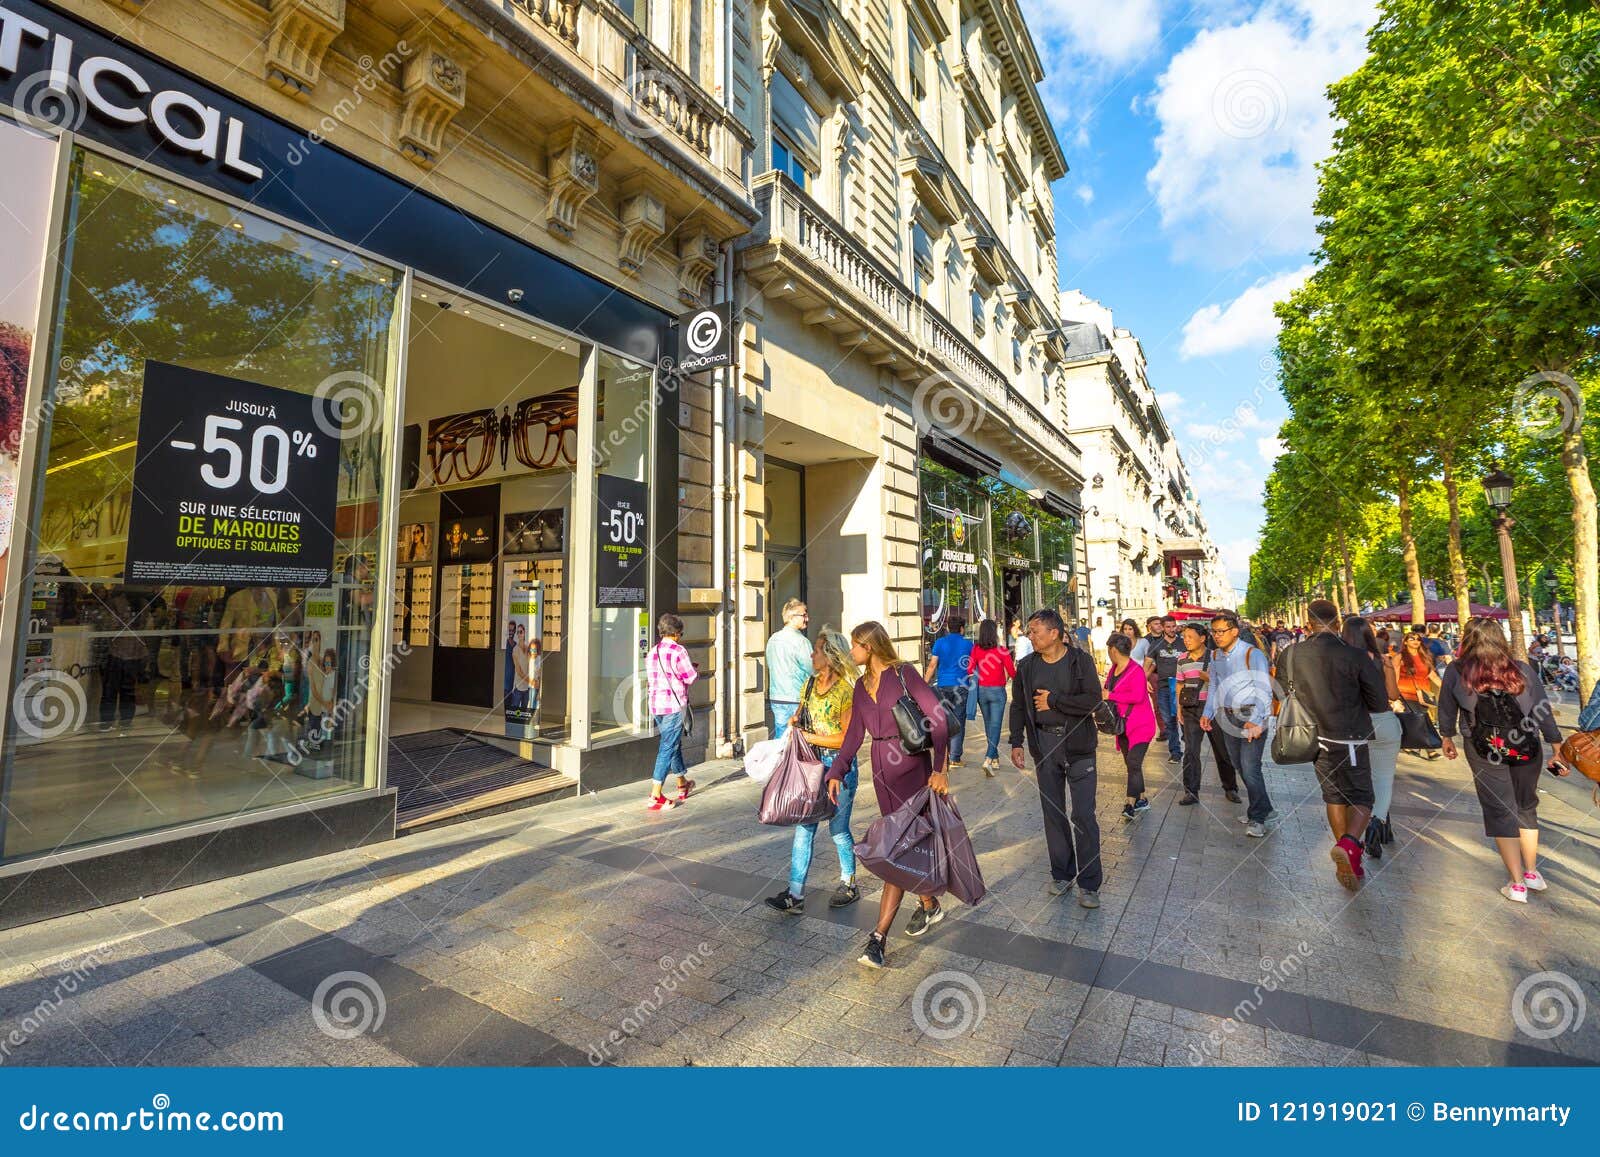 Avenue des champs elysées shopping hi-res stock photography and